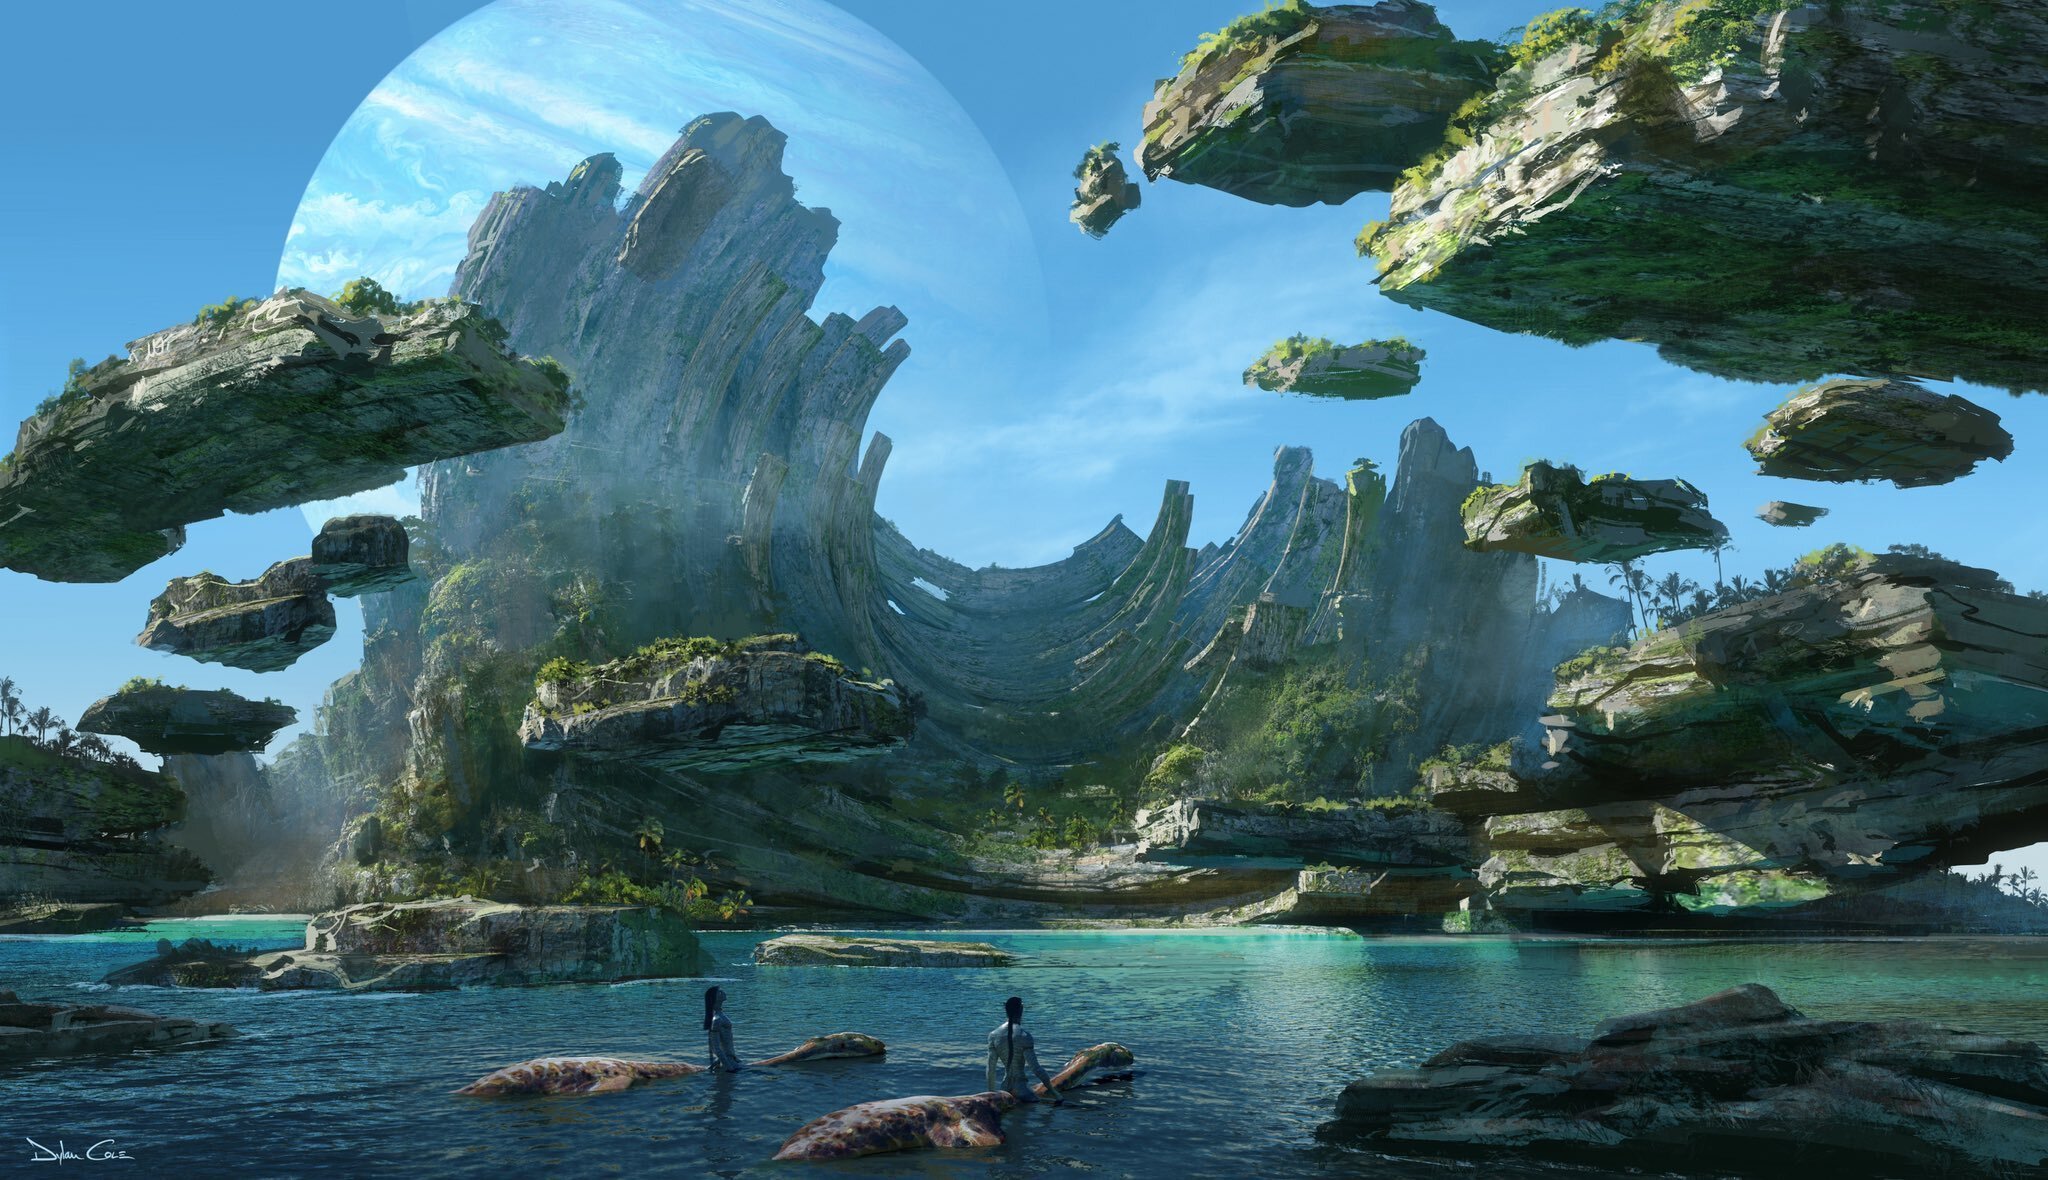 Định dạng IMAX 3D cho Avatar 2 sẽ đưa khán giả đến một thế giới hoàn toàn khác, với trải nghiệm hình ảnh và âm thanh sống động, chân thực nhất. Hãy chuẩn bị sẵn sàng cho một cuộc phiêu lưu rực rỡ cùng nhân vật chính của bộ phim này.